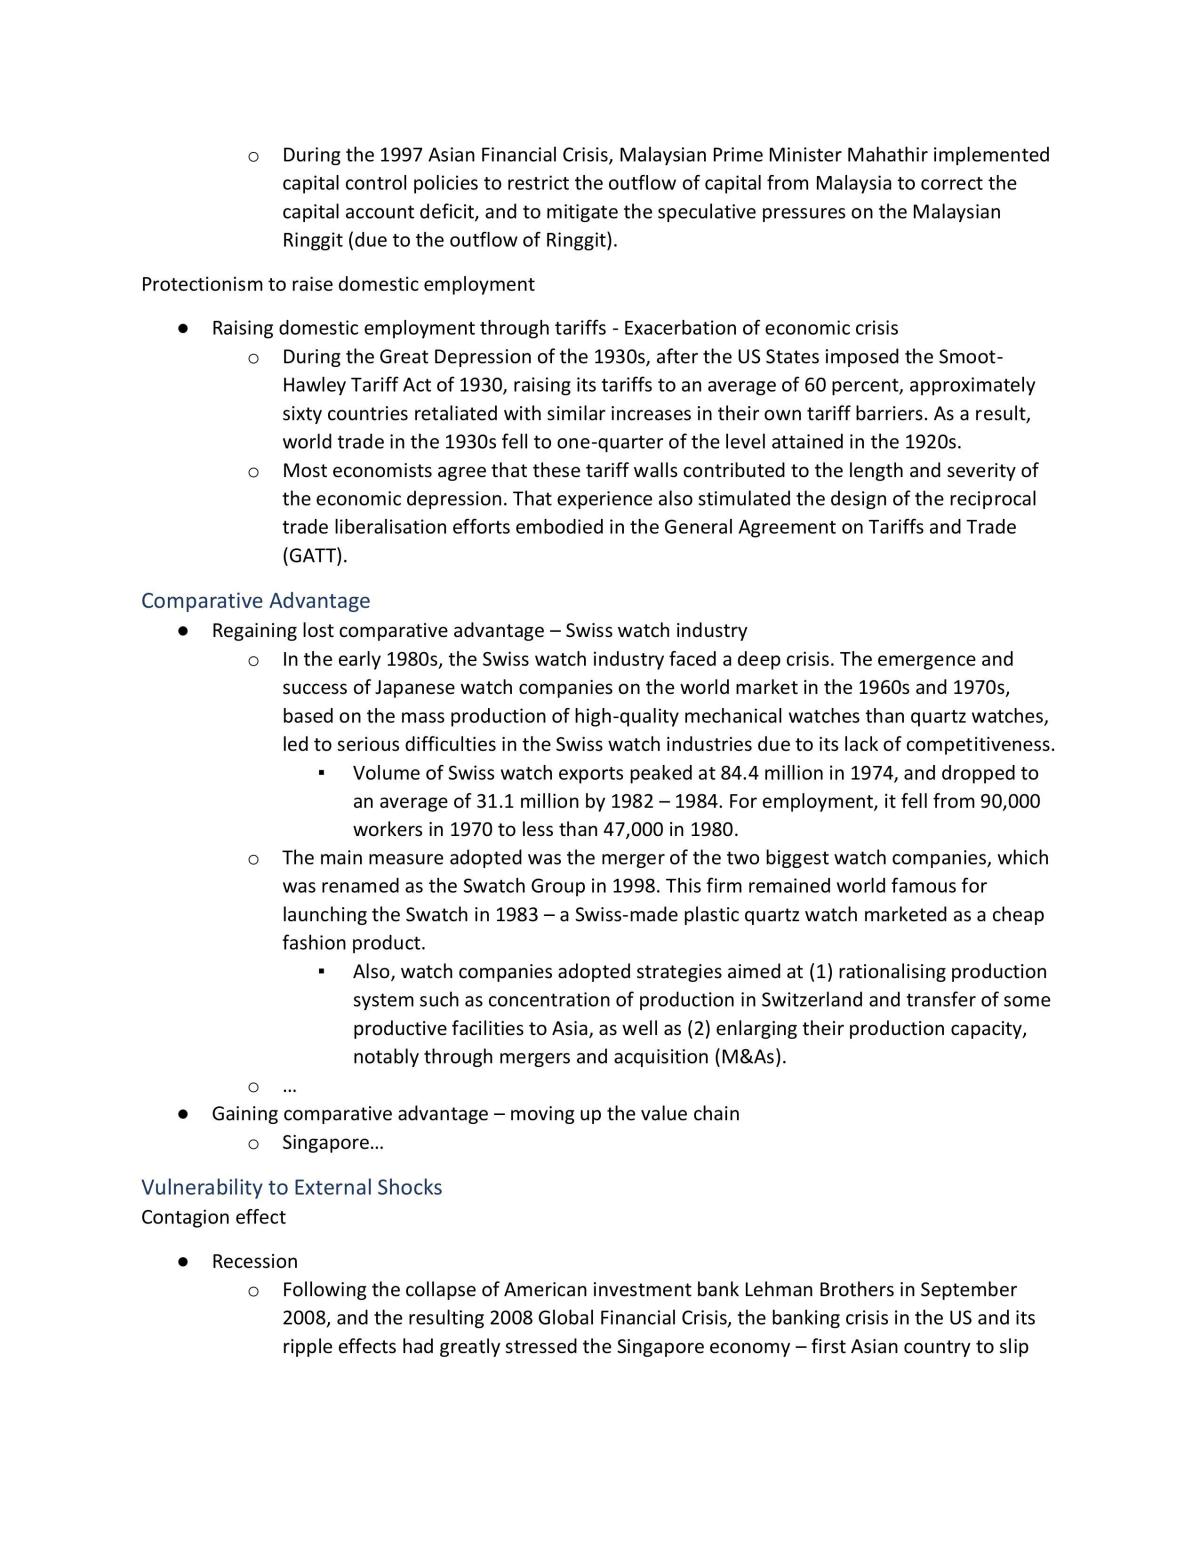 H2 Economics notes - Page 127